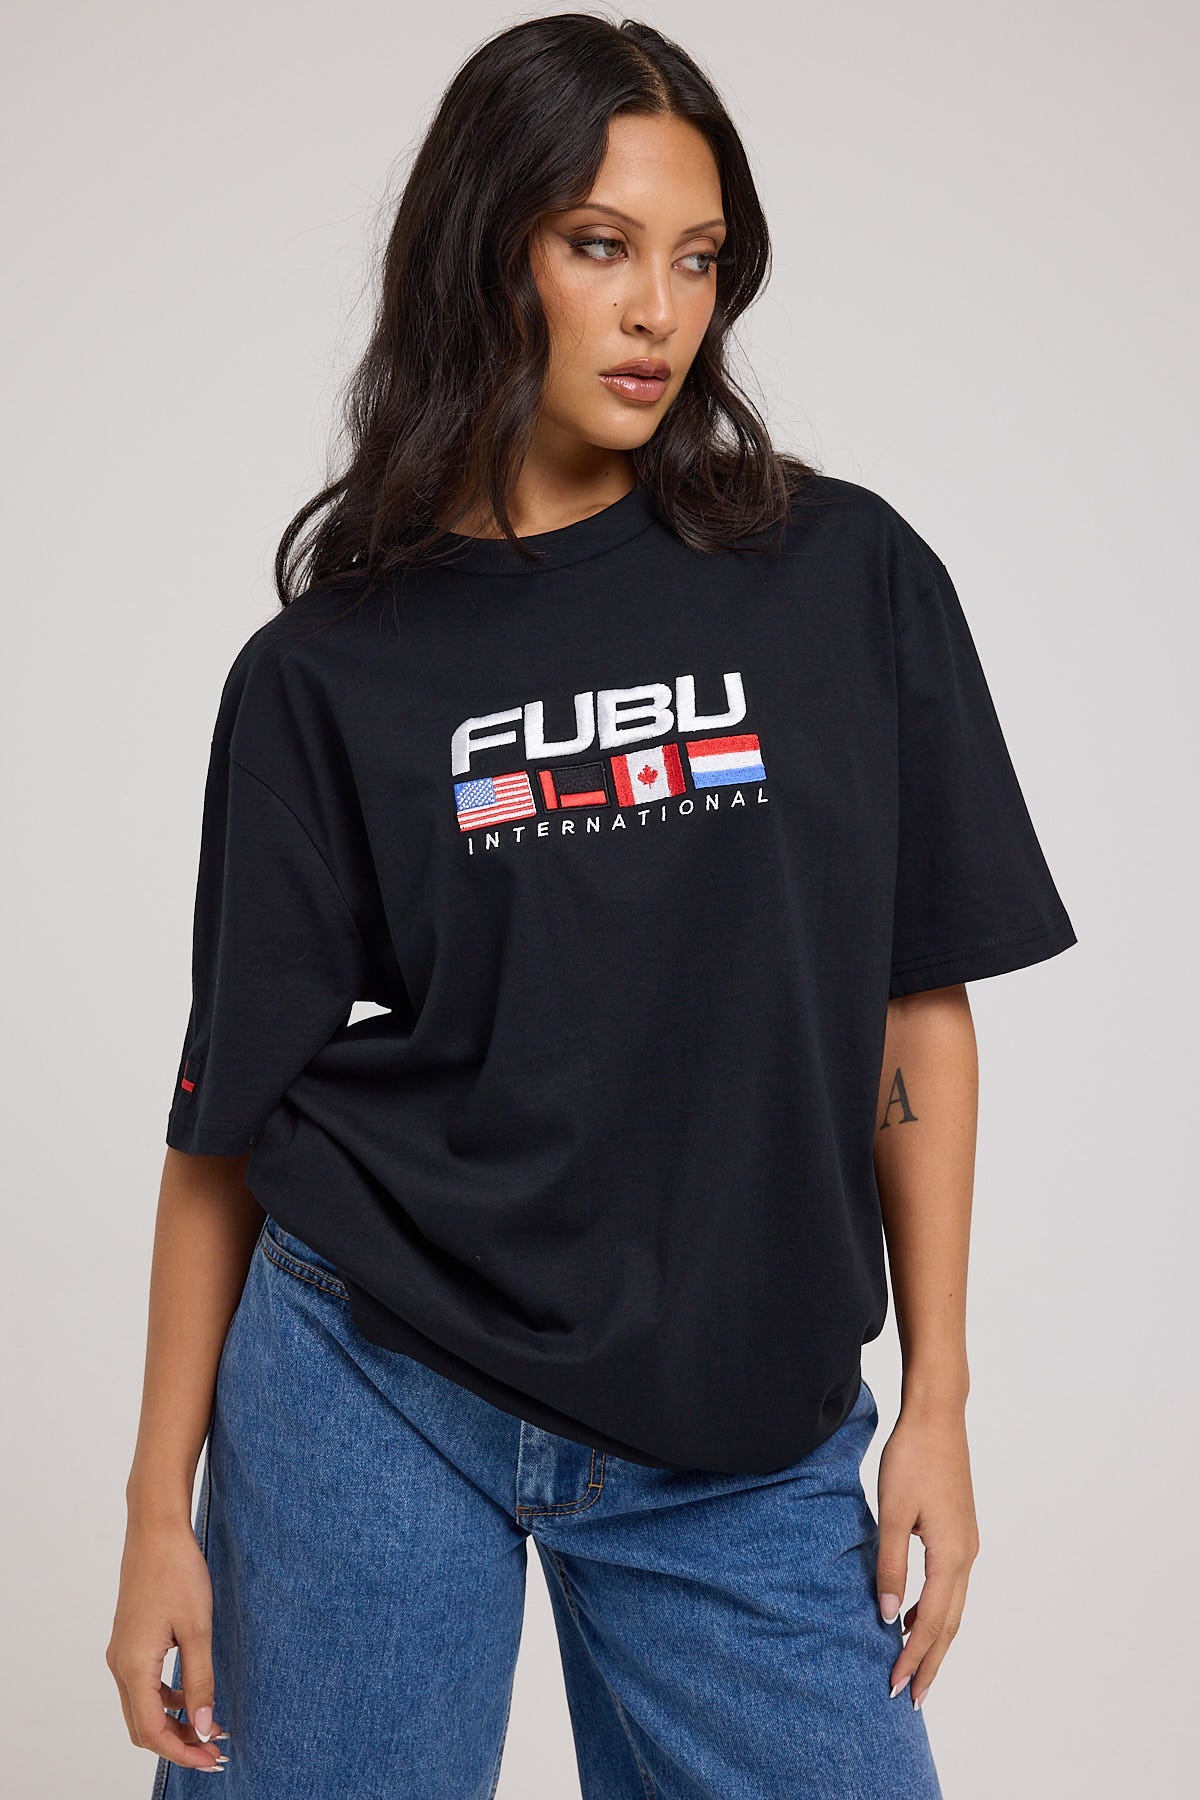 Fubu Corporate Intnl T-Shirt Black